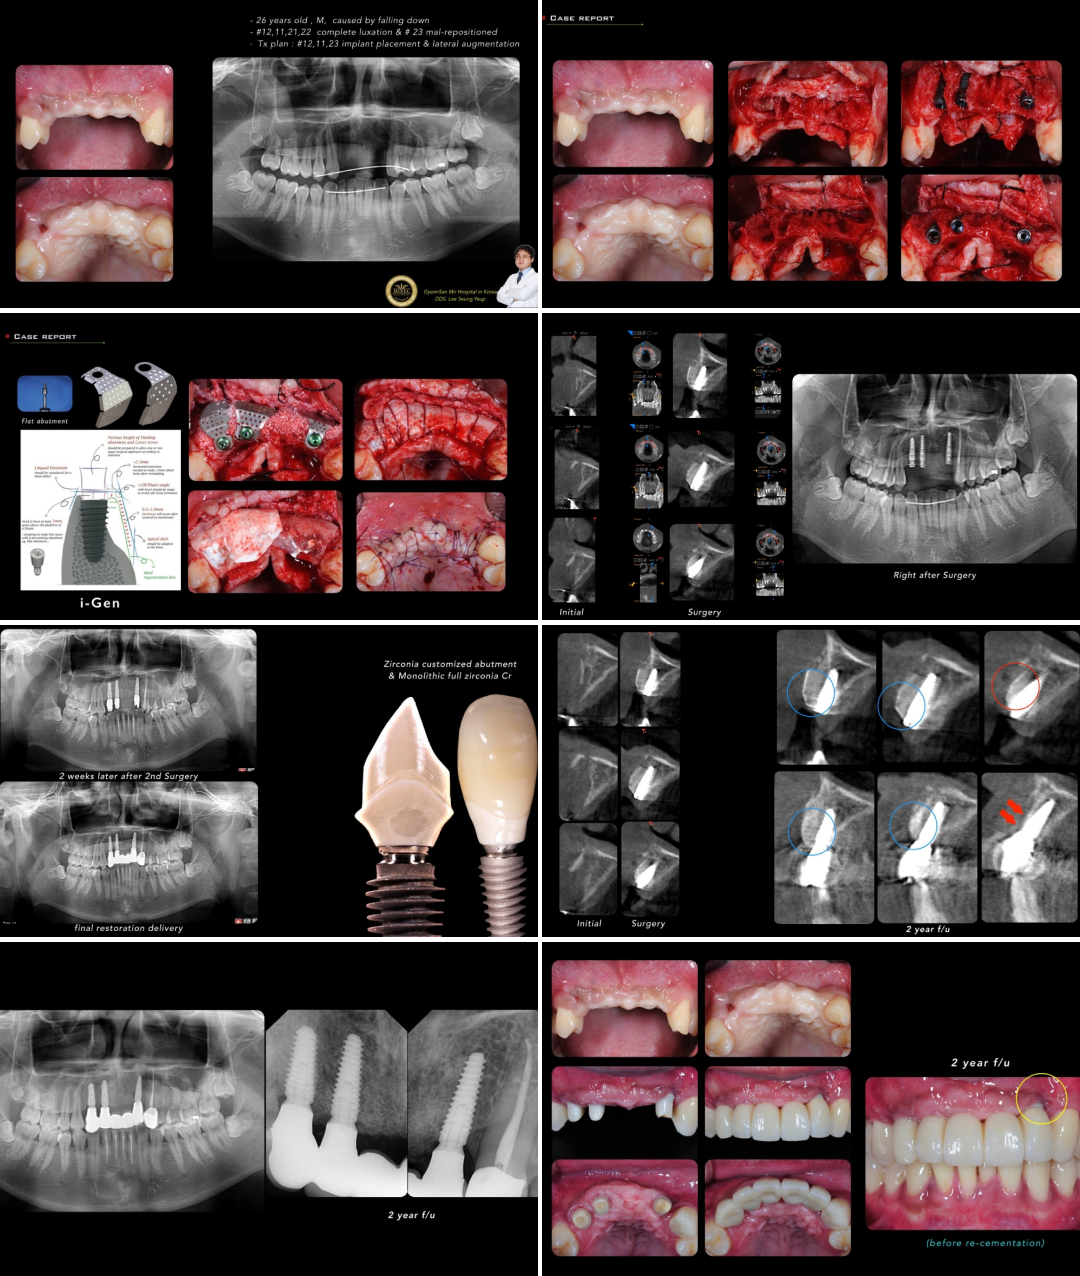 Клинический случай Seung Yeup Lee: проведена направленная костная регенерация с установкой мембраны iGen, с последующей имплантацией Anyridge зубов №12,11,22.